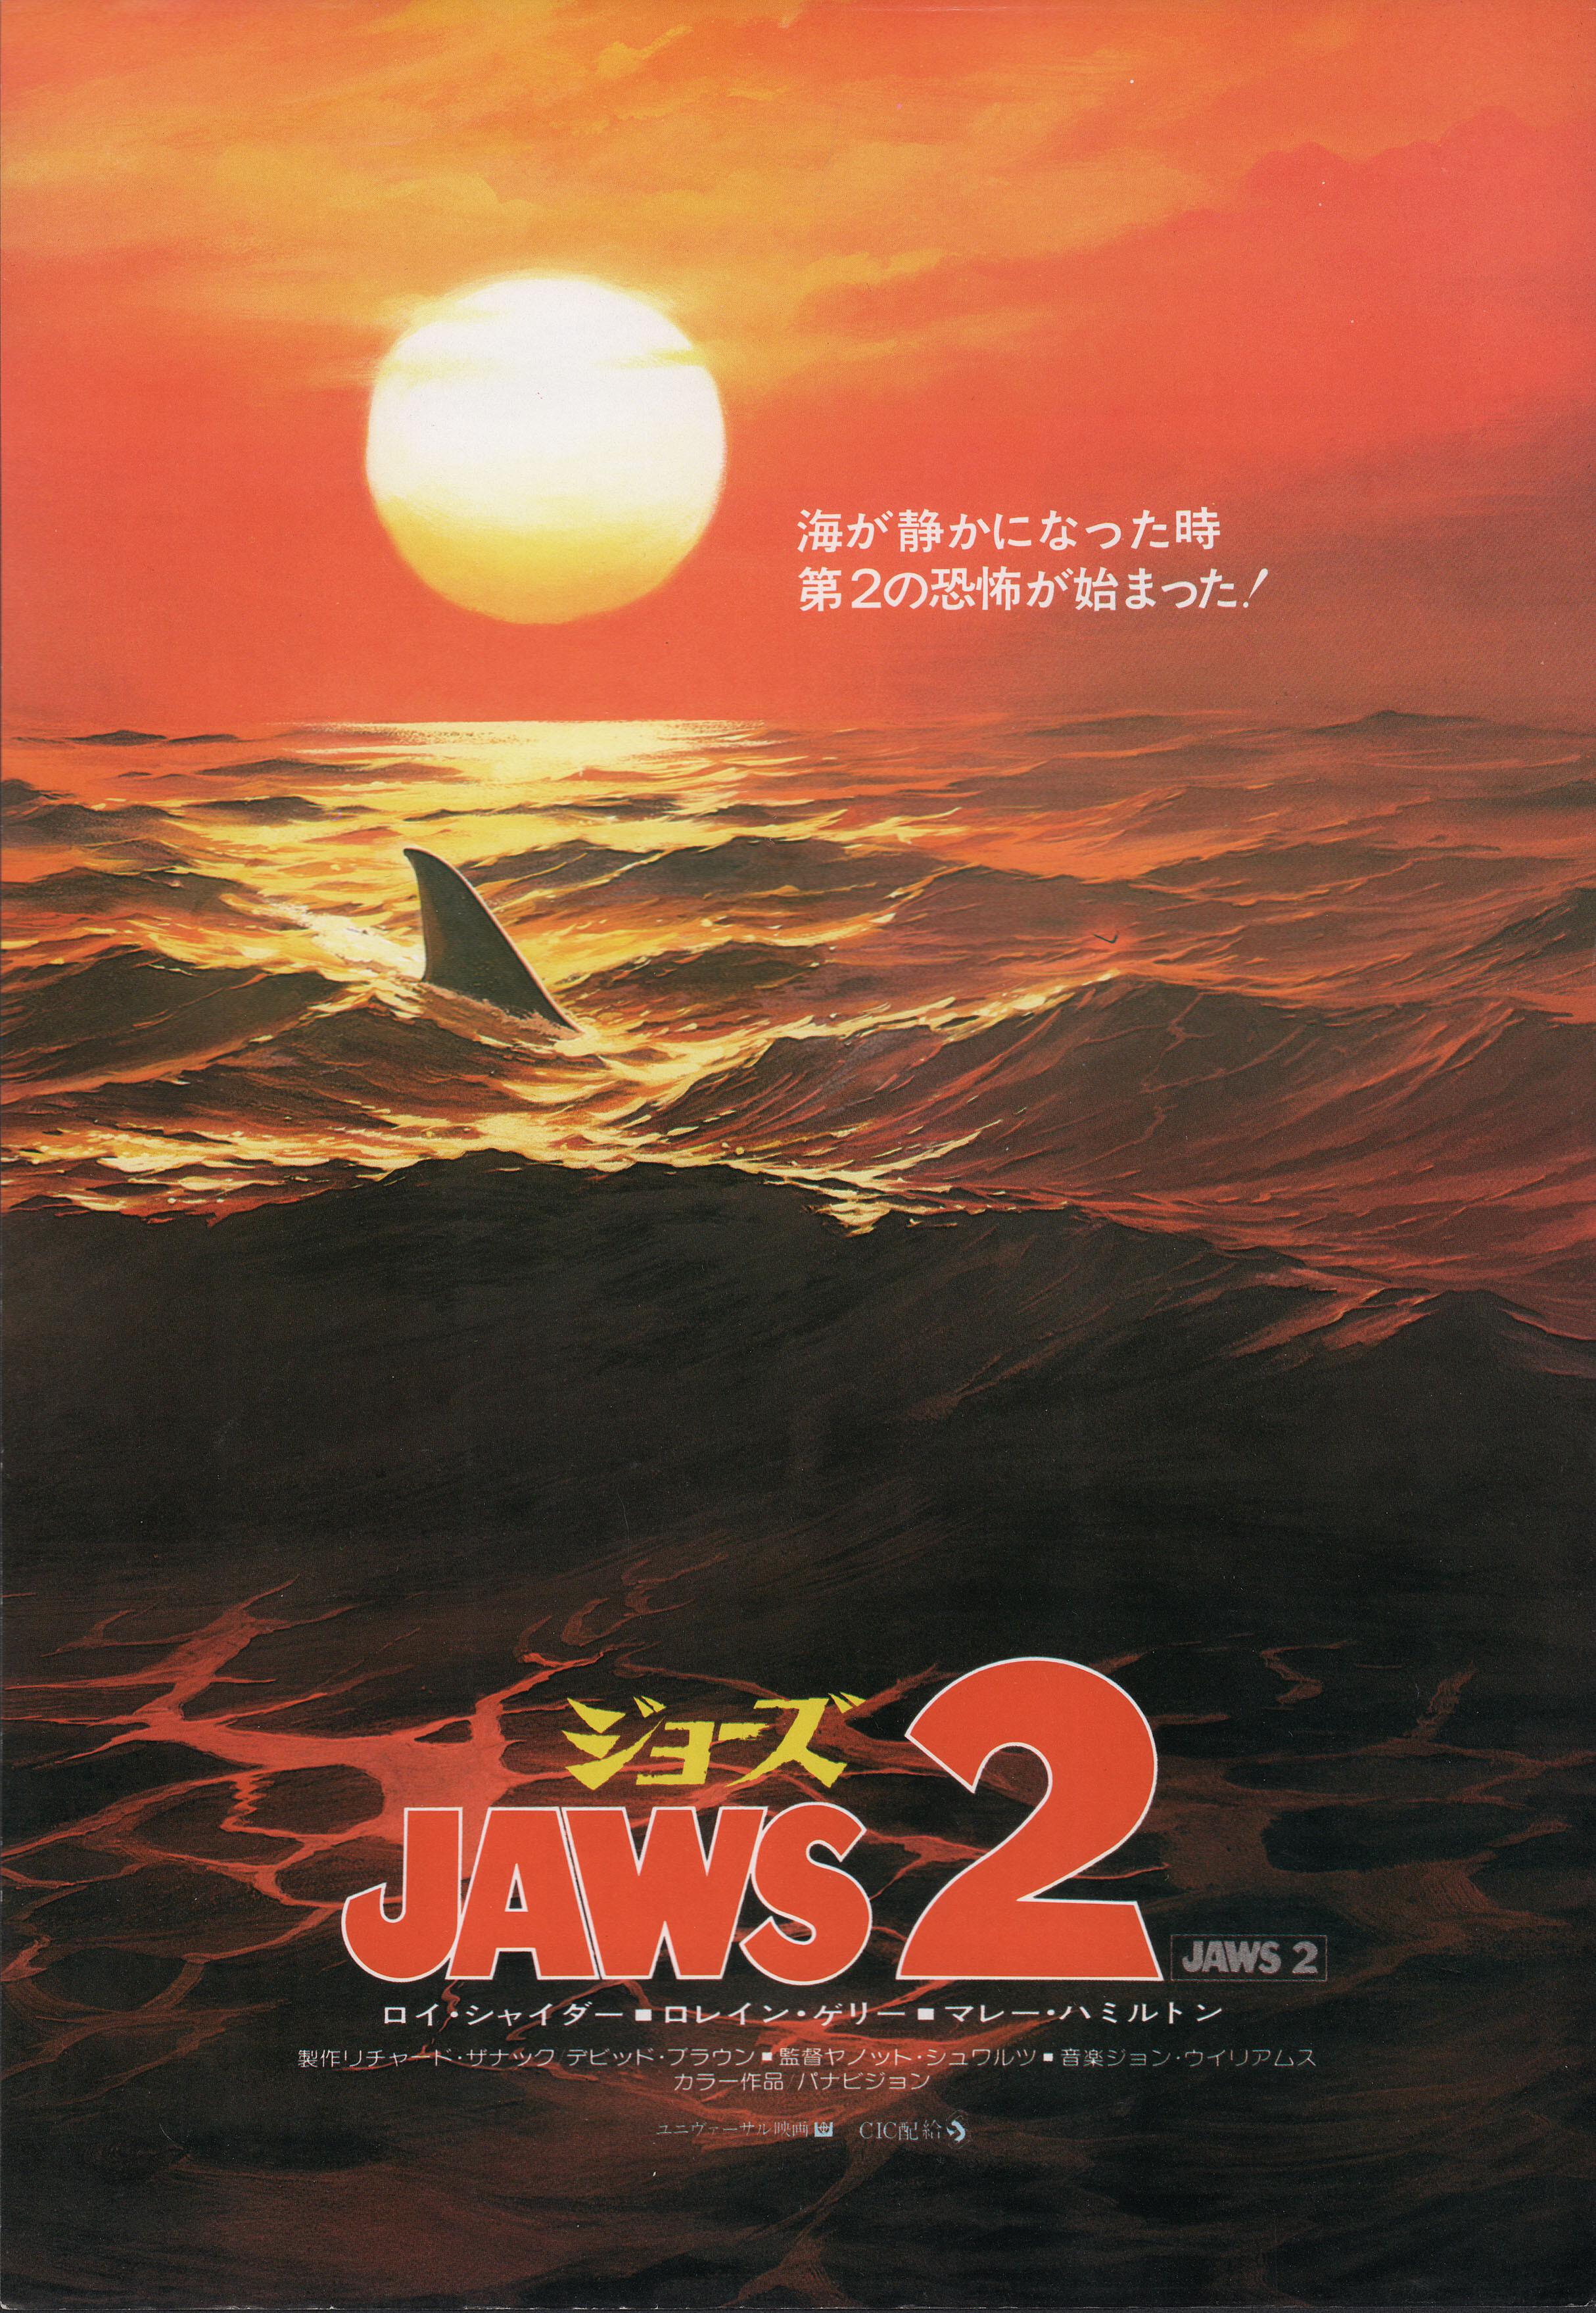 Челюсти 2 (Jaws 2, 1978), режиссёр Жанно Шварц, японский постер к фильму (ужасы, 1978 год)_1